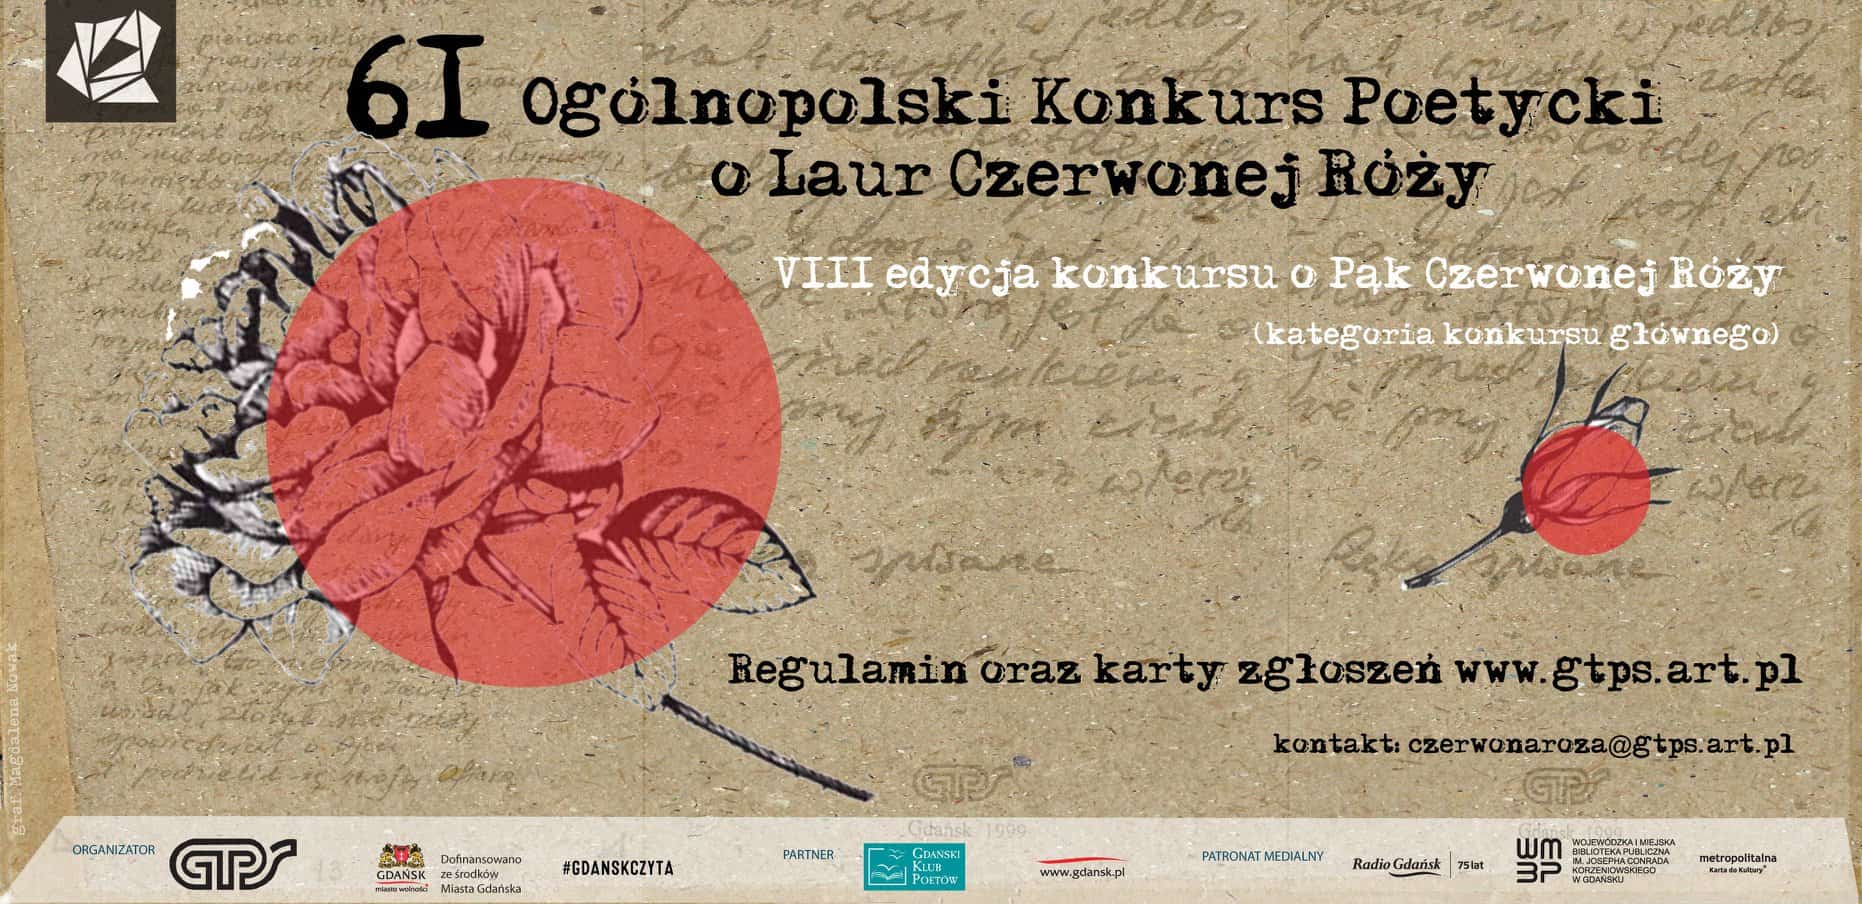 Weź udział w Ogólnopolskim Konkursie Poetyckim „O Laur Czerwonej Róży” i wygraj 2000 zł!